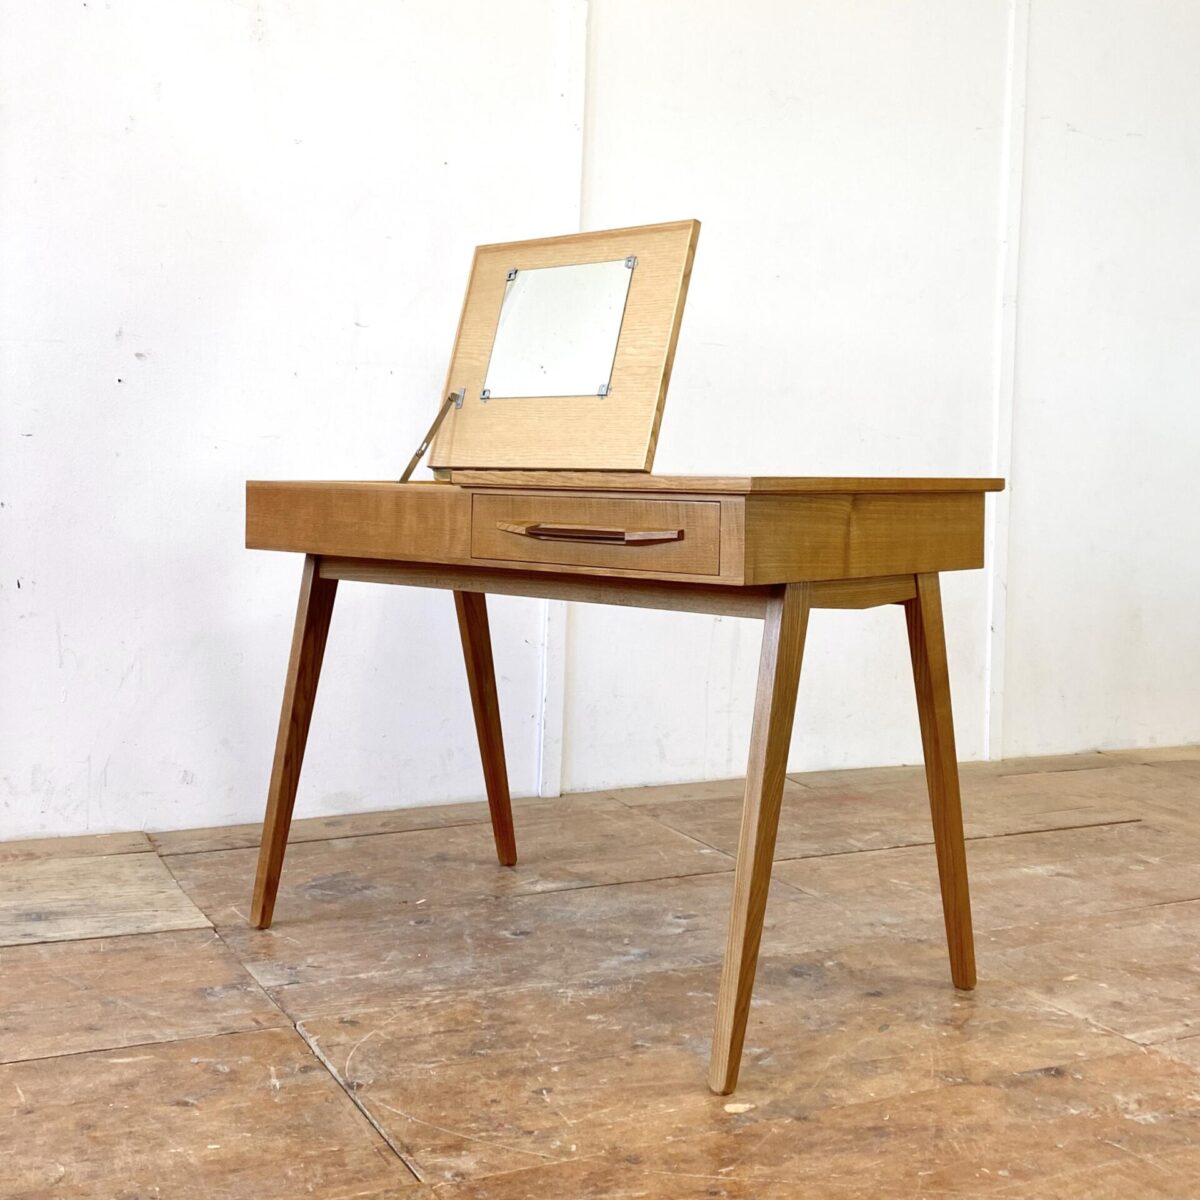 Deuxieme.shop swissdesign Desk. 50er Jahre Schreibtisch aus Esche von Corta Multiform. 105x60cm Höhe 74cm. Der Tisch hat eine Schublade mit Kunstleder griff, eine Klappe mit Stauraum und Schminkspiegel. Der Spiegel ist etwas beschlagen, ansonsten ist der Schreibtisch in gepflegtem guten Zustand.